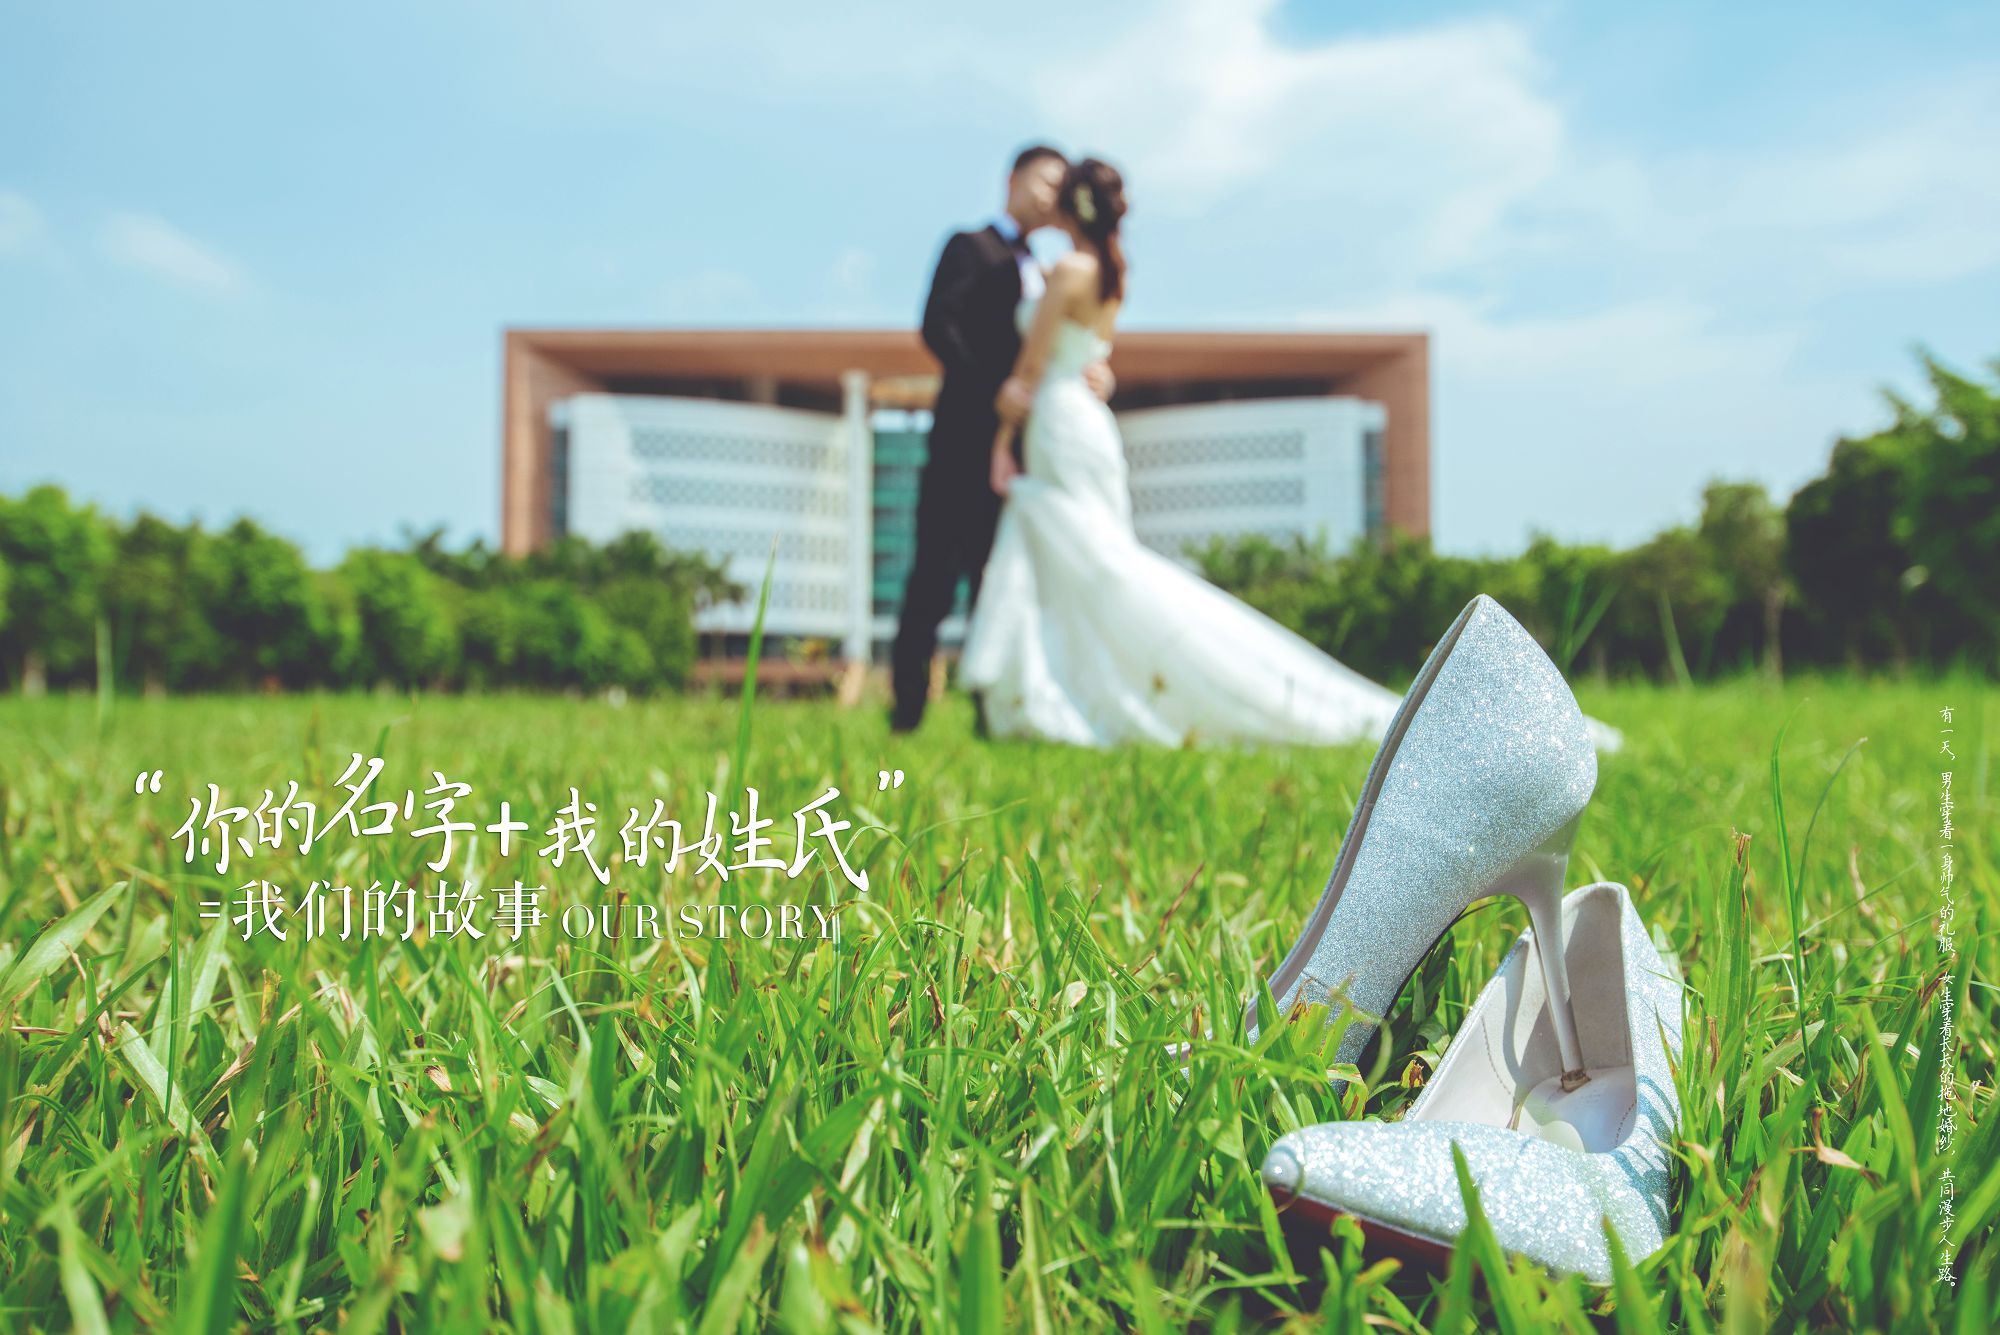 2018年11月广州婚纱照图片,佛山婚纱照,婚纱照图片